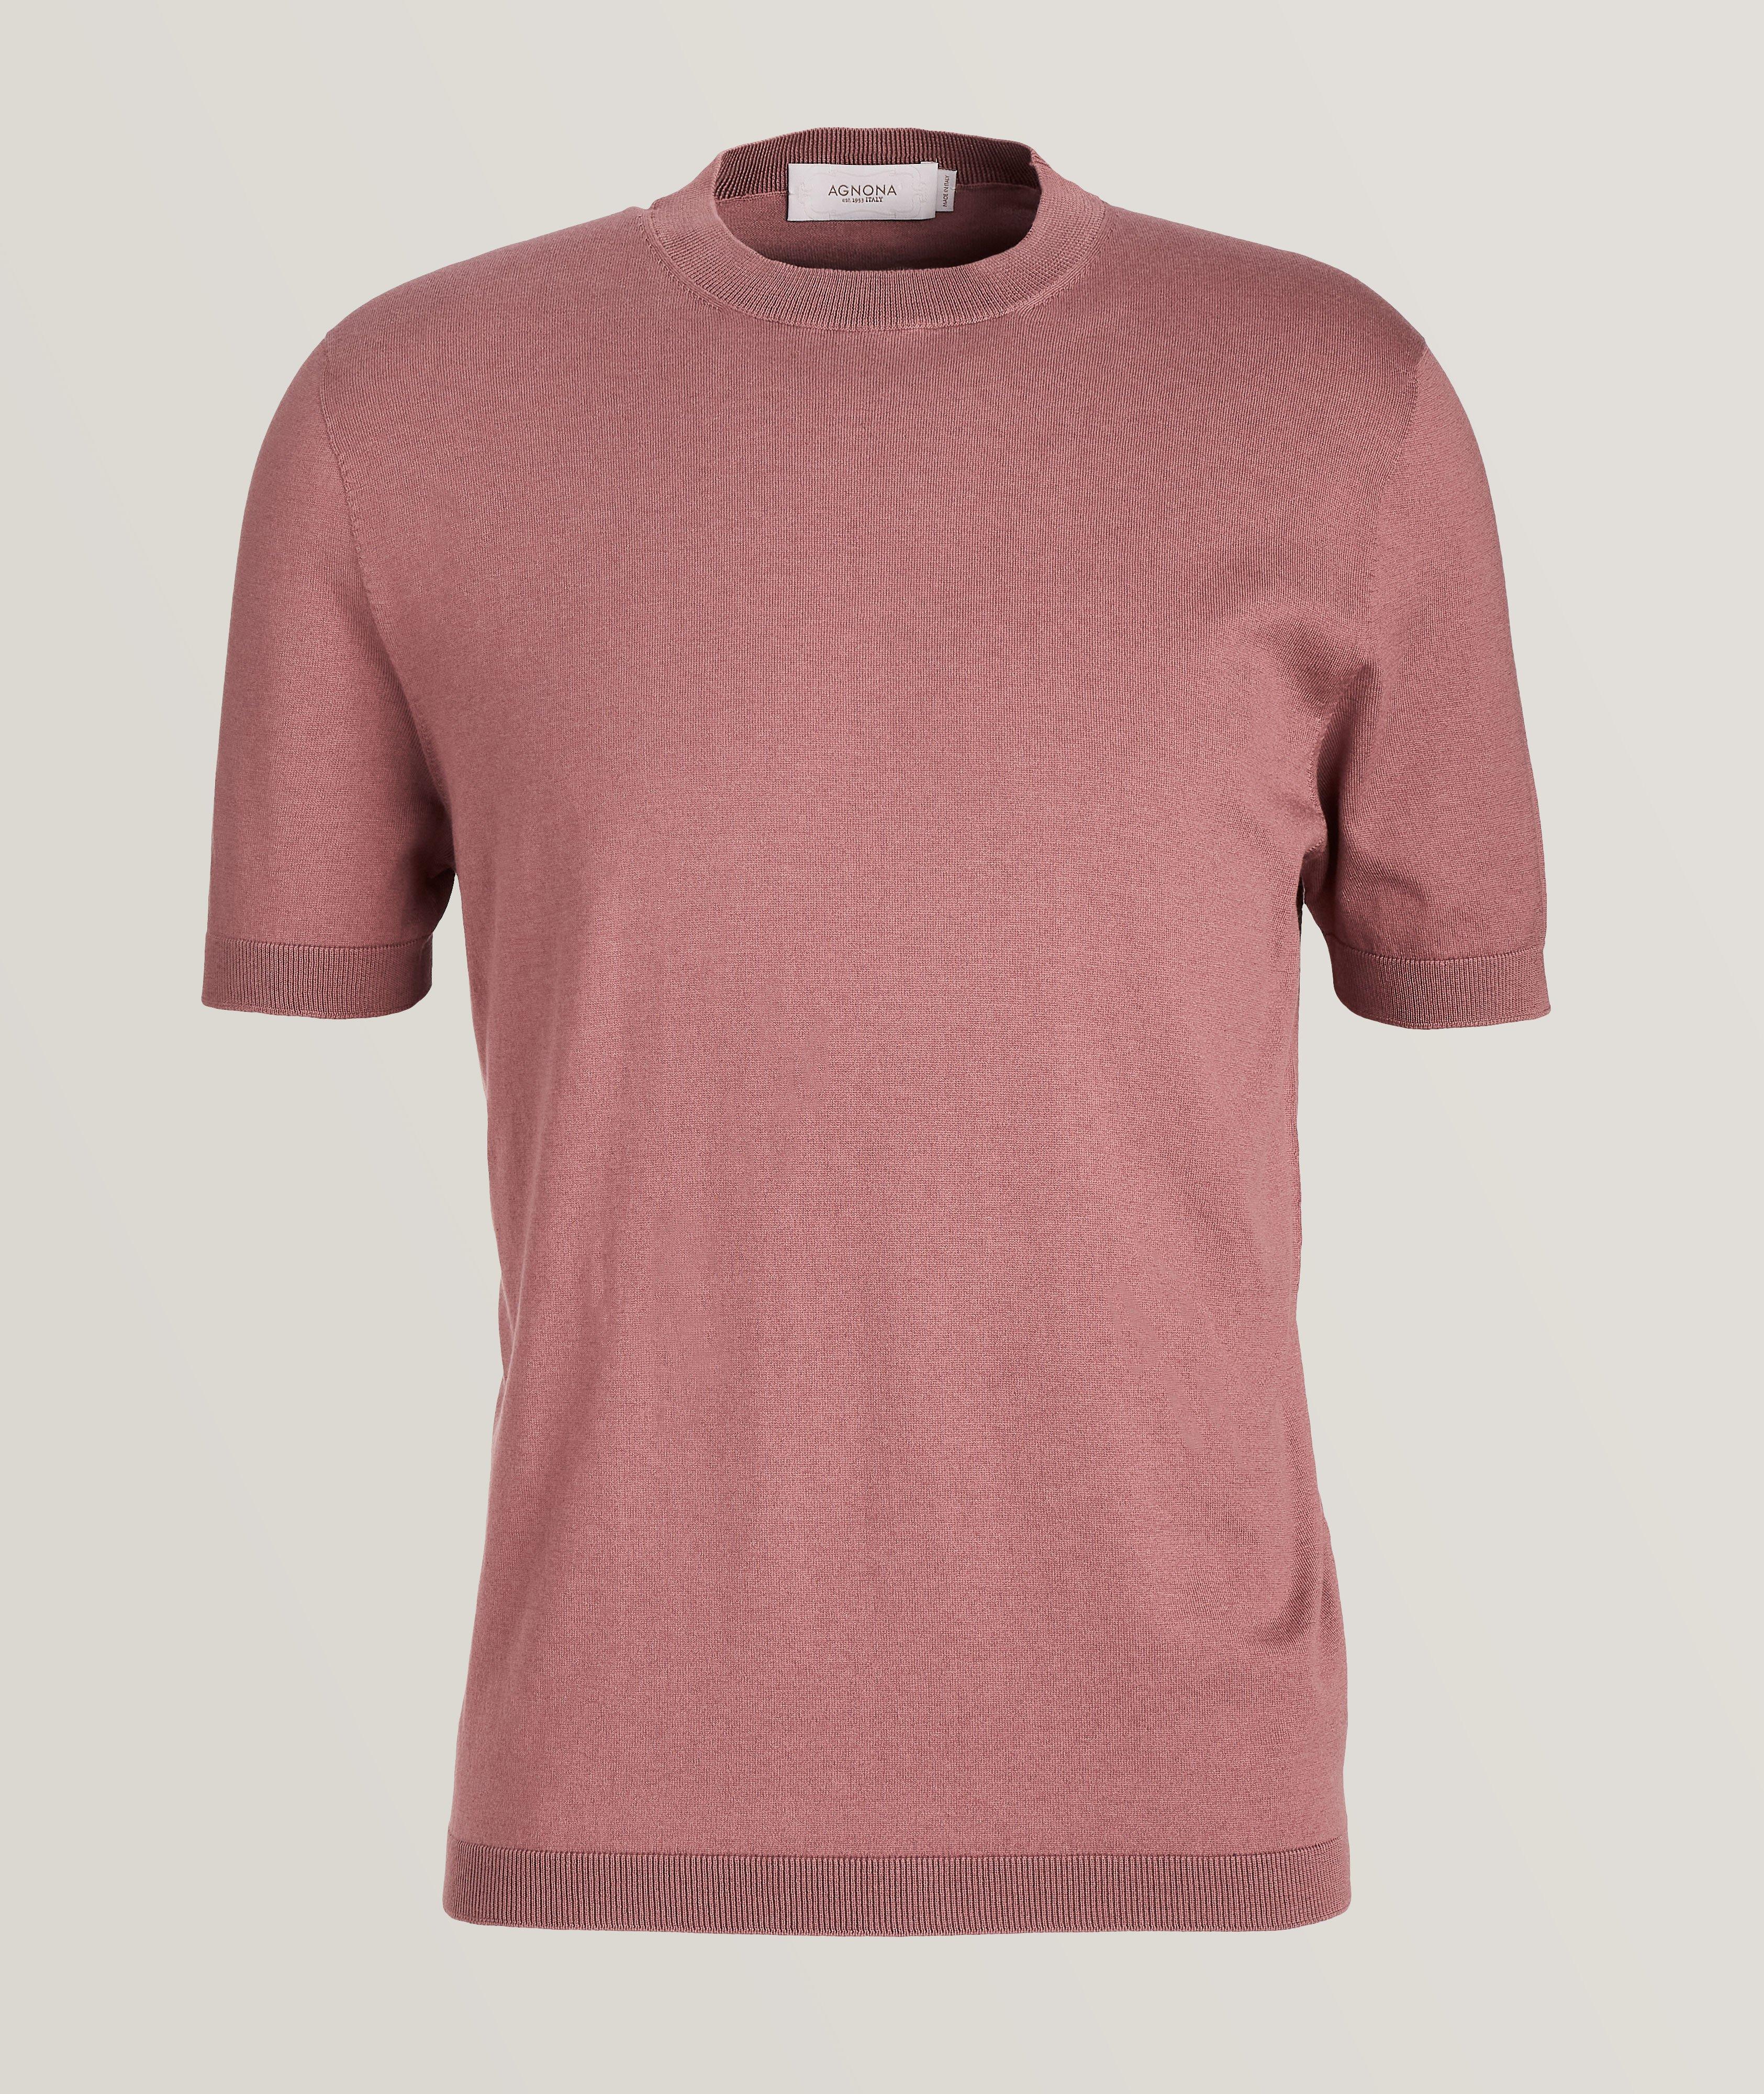 T-shirt en tricot de soie et de coton à encolure ronde image 0